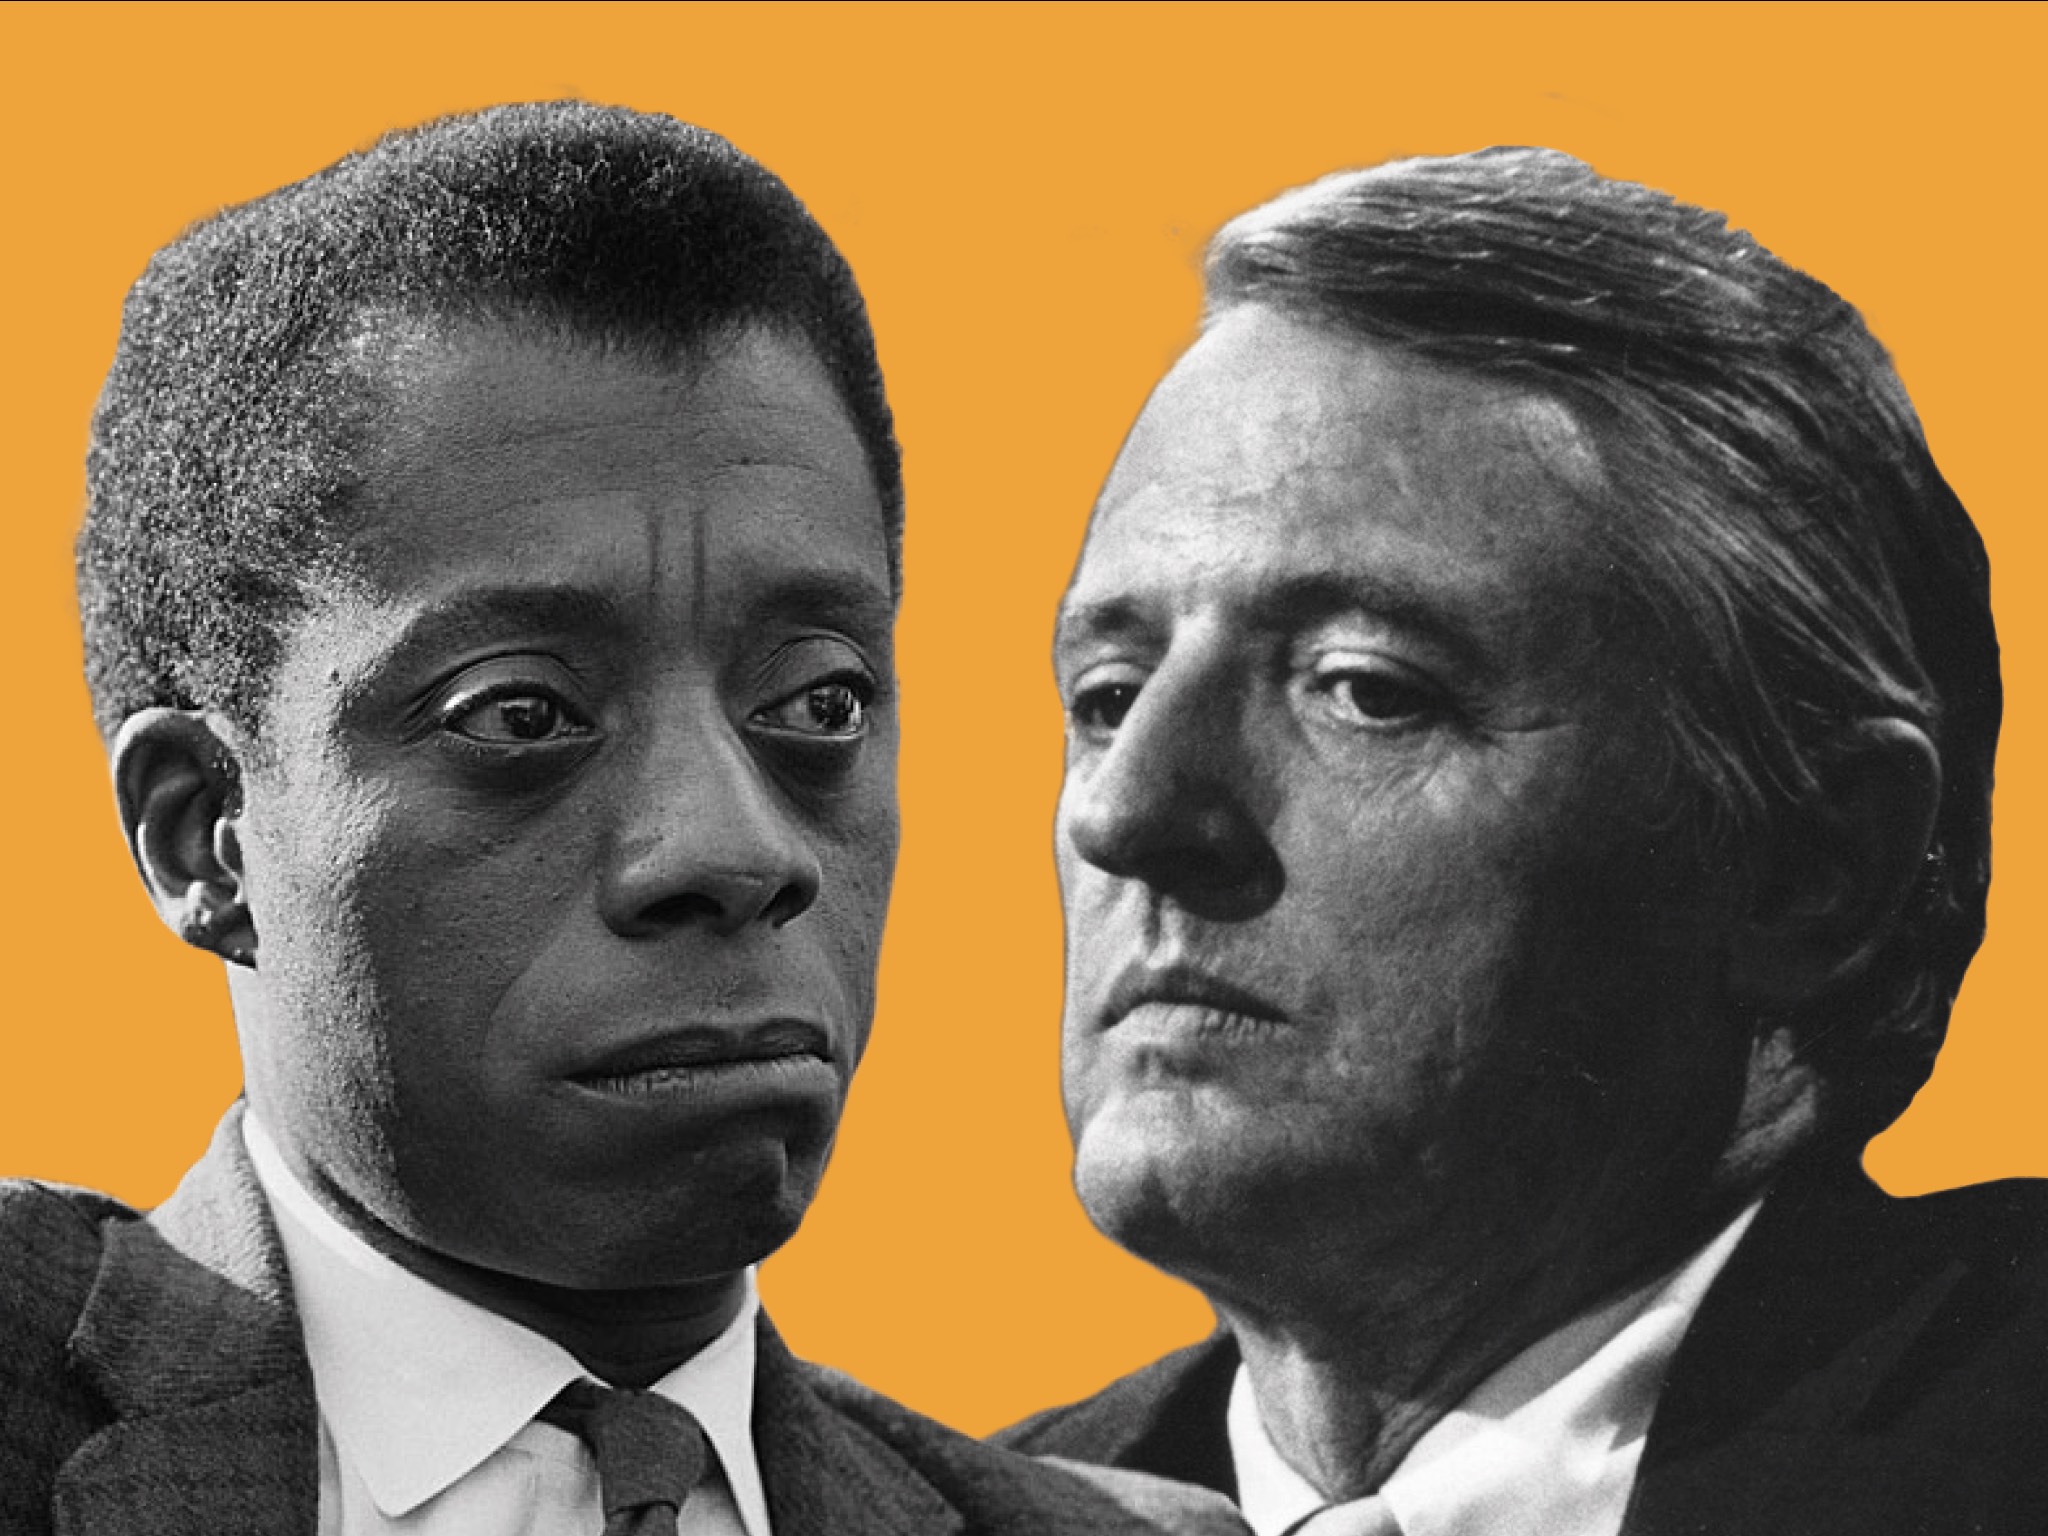 Debate: Baldwin VS Buckley